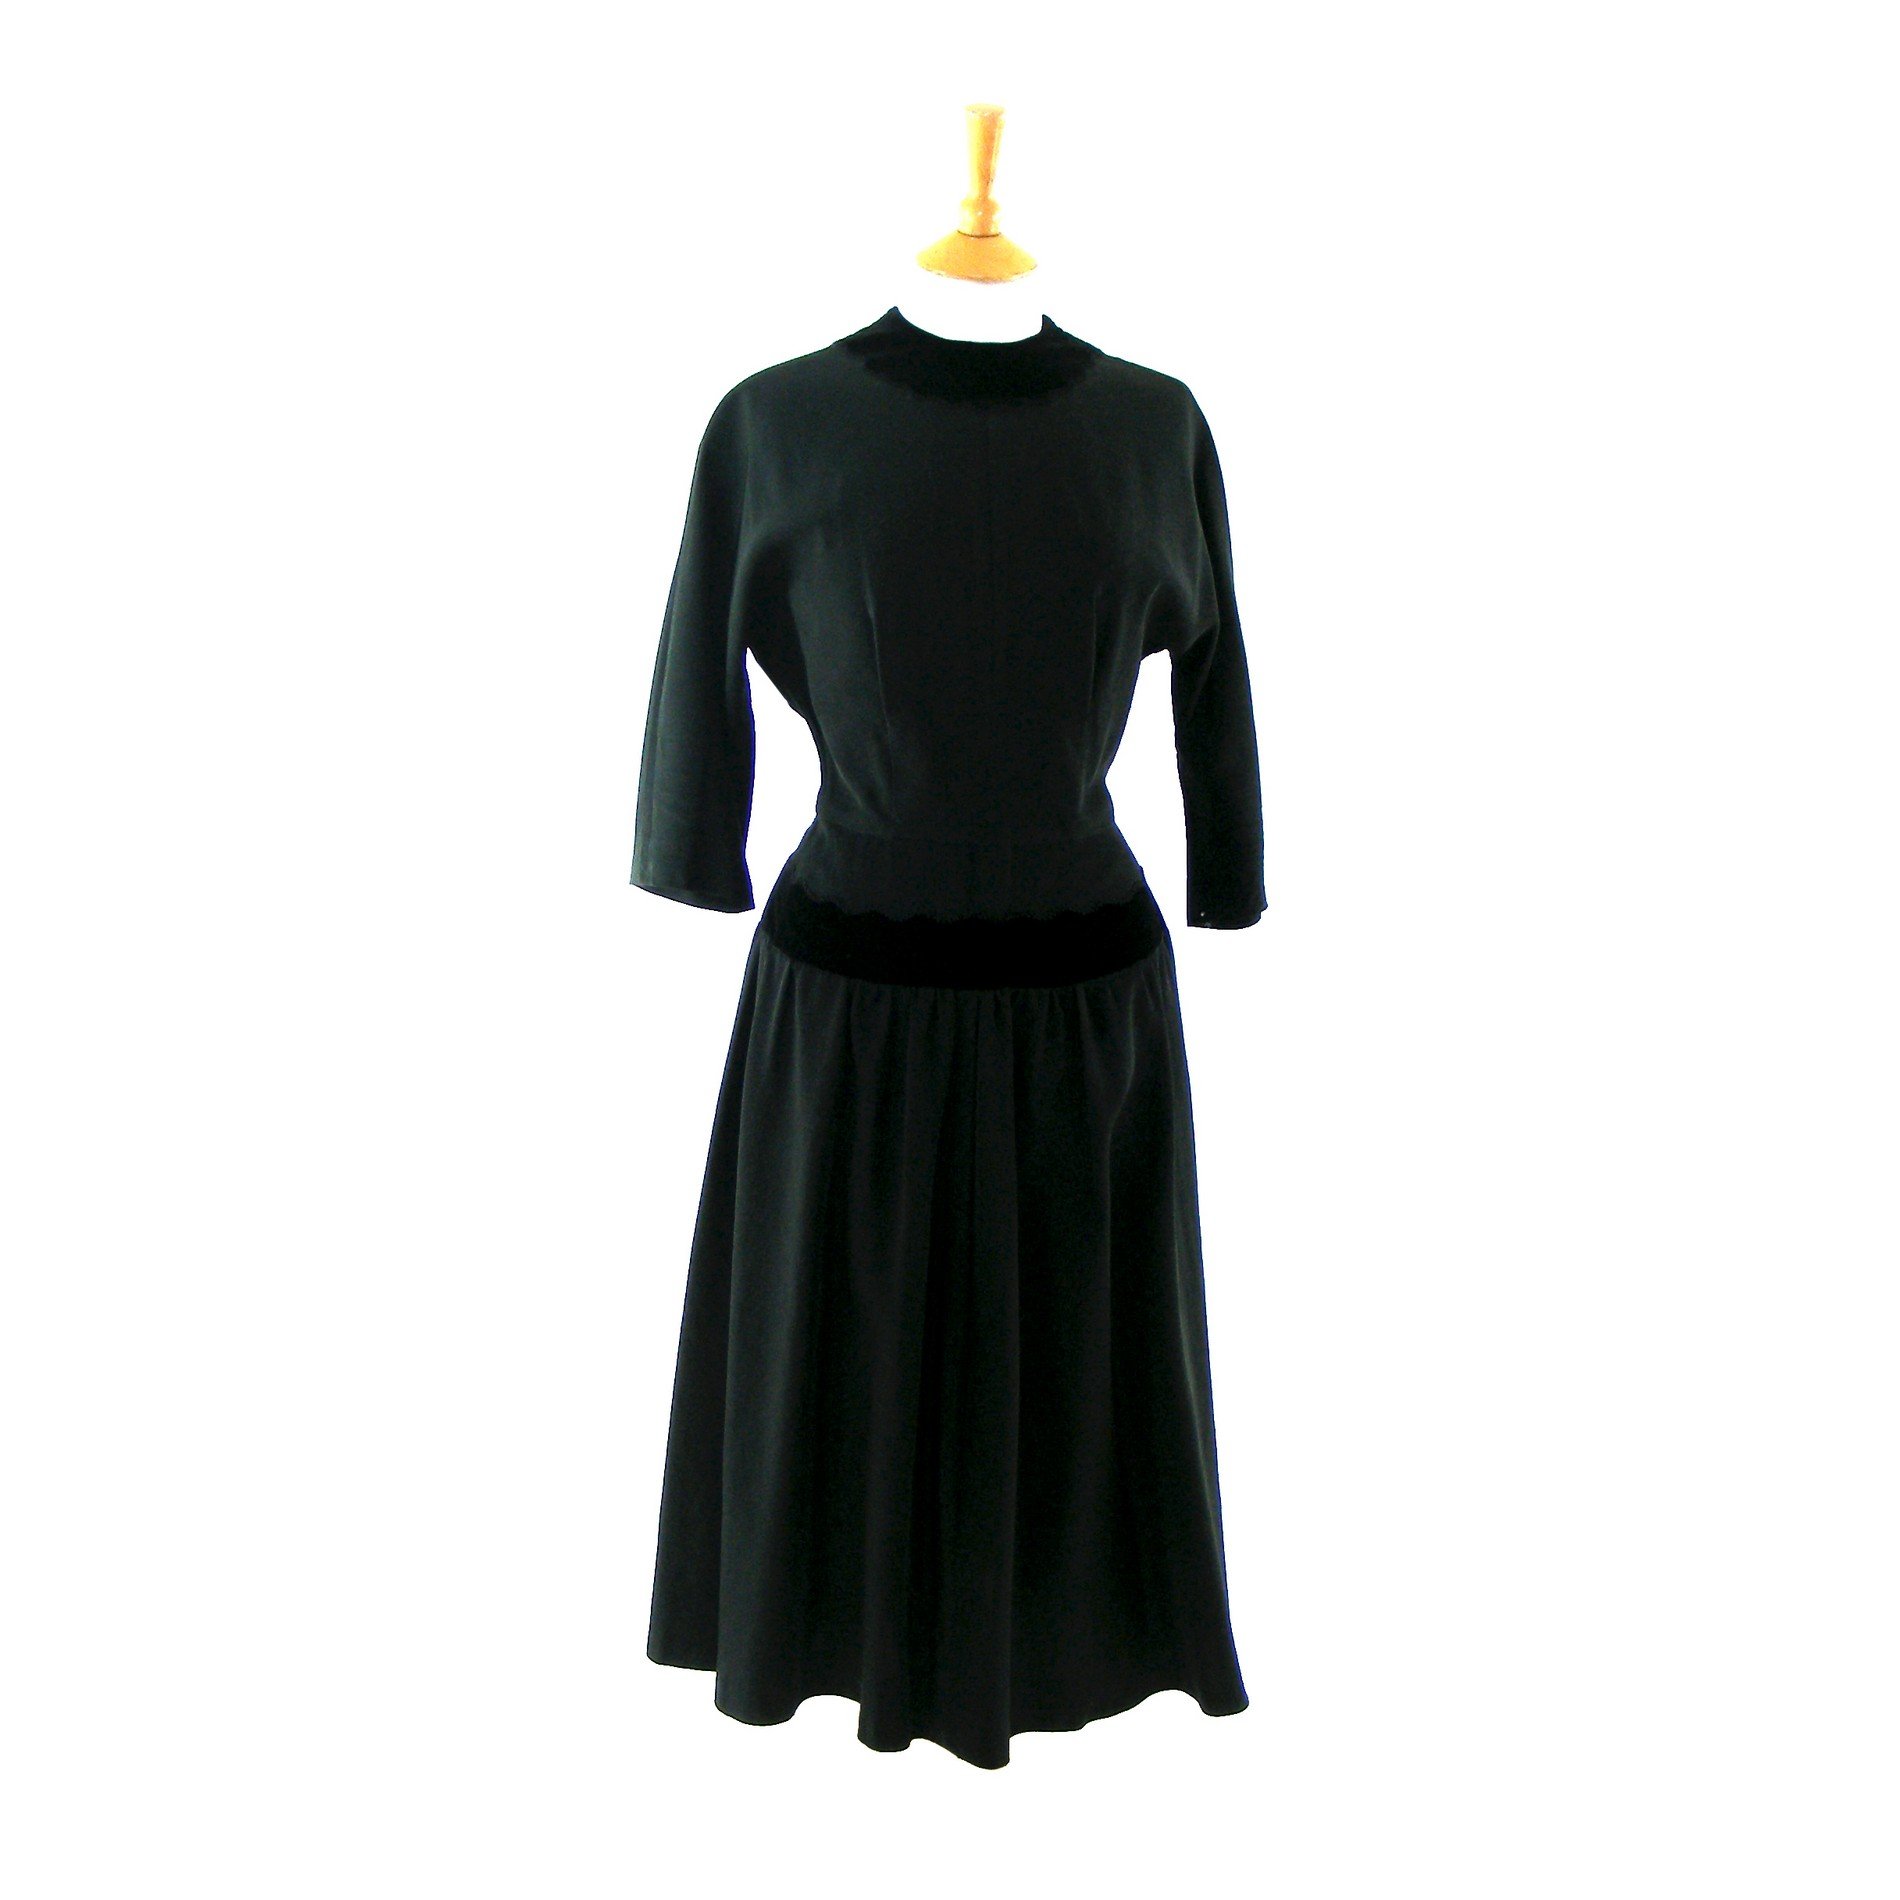 Black vintage dress 1940s - Vintage Clothing - Blue 17